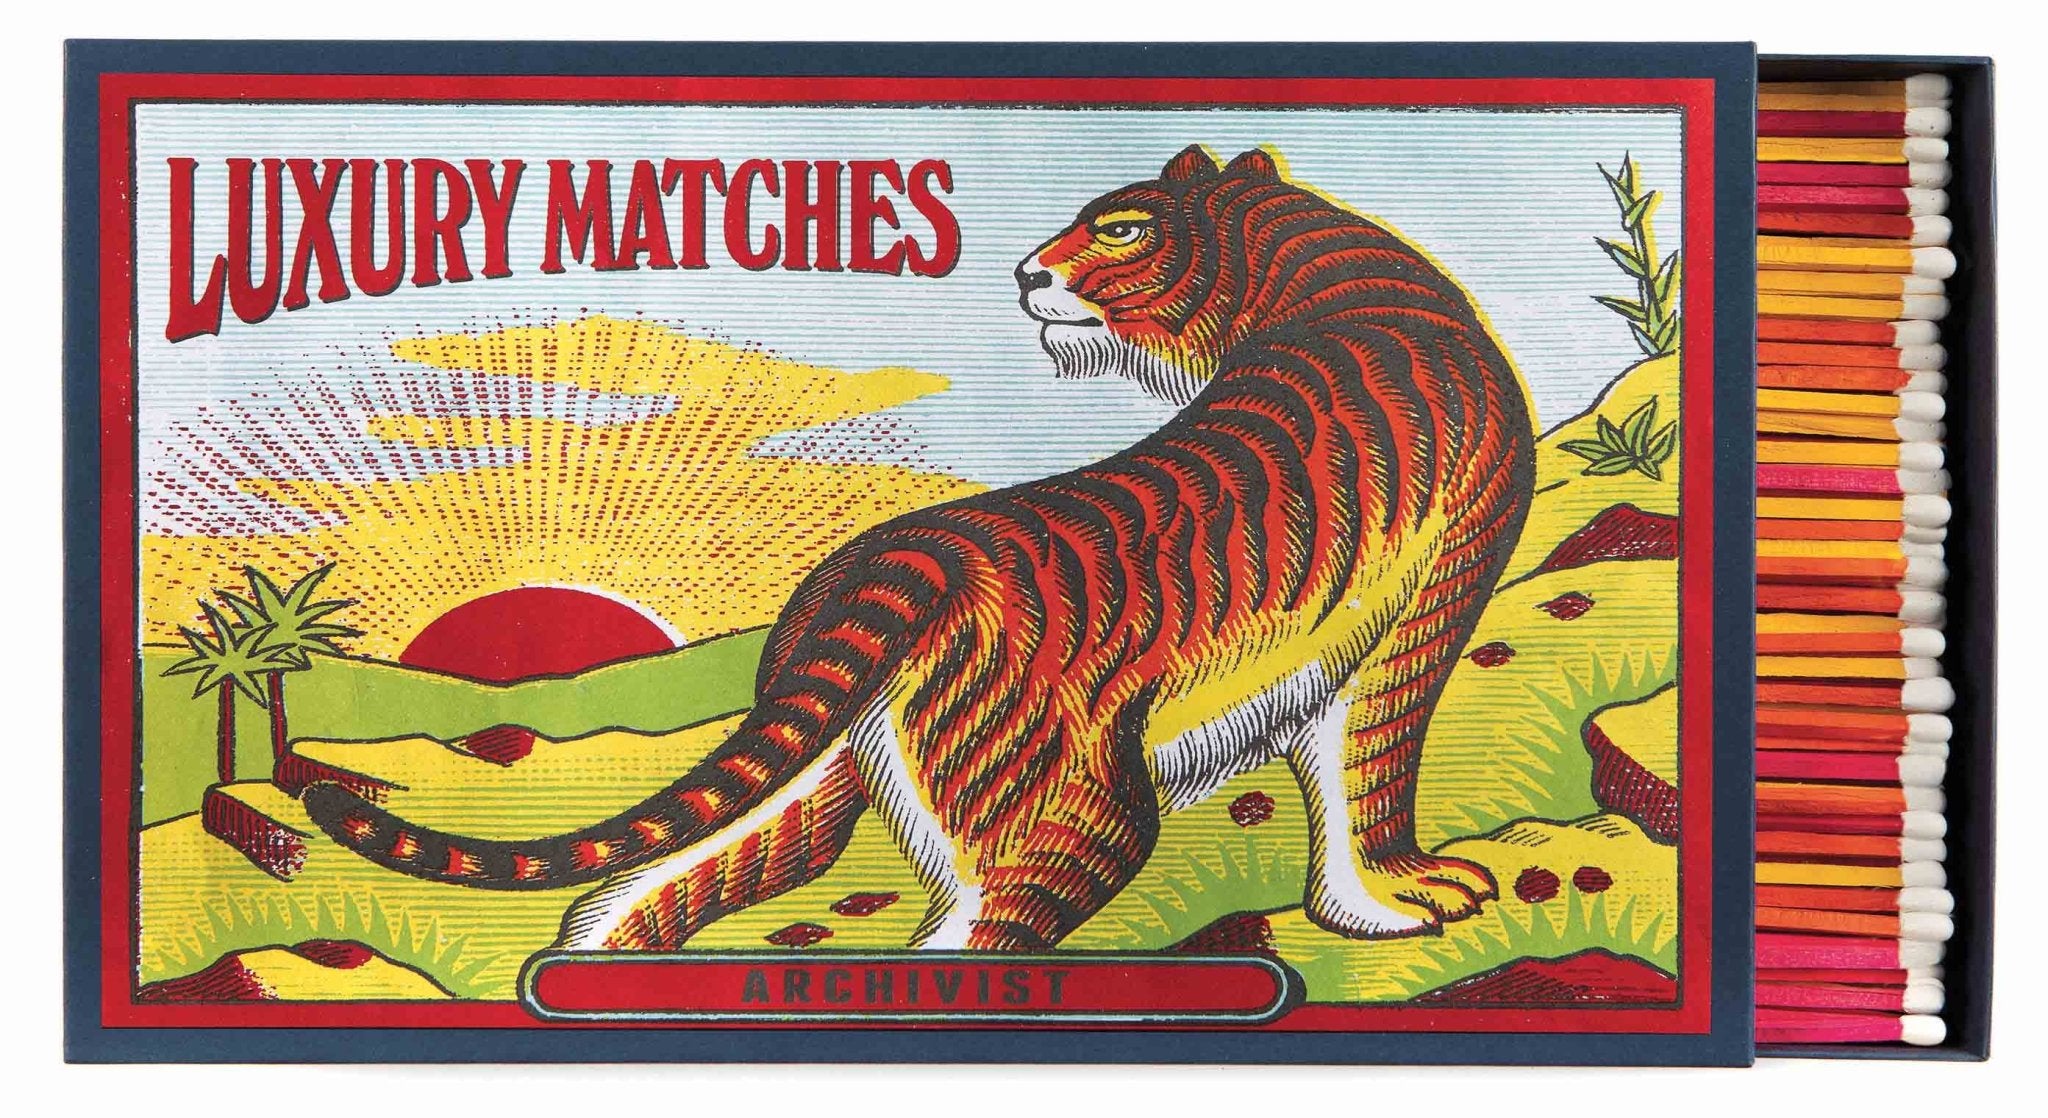 The Tiger Matchbox - Joy